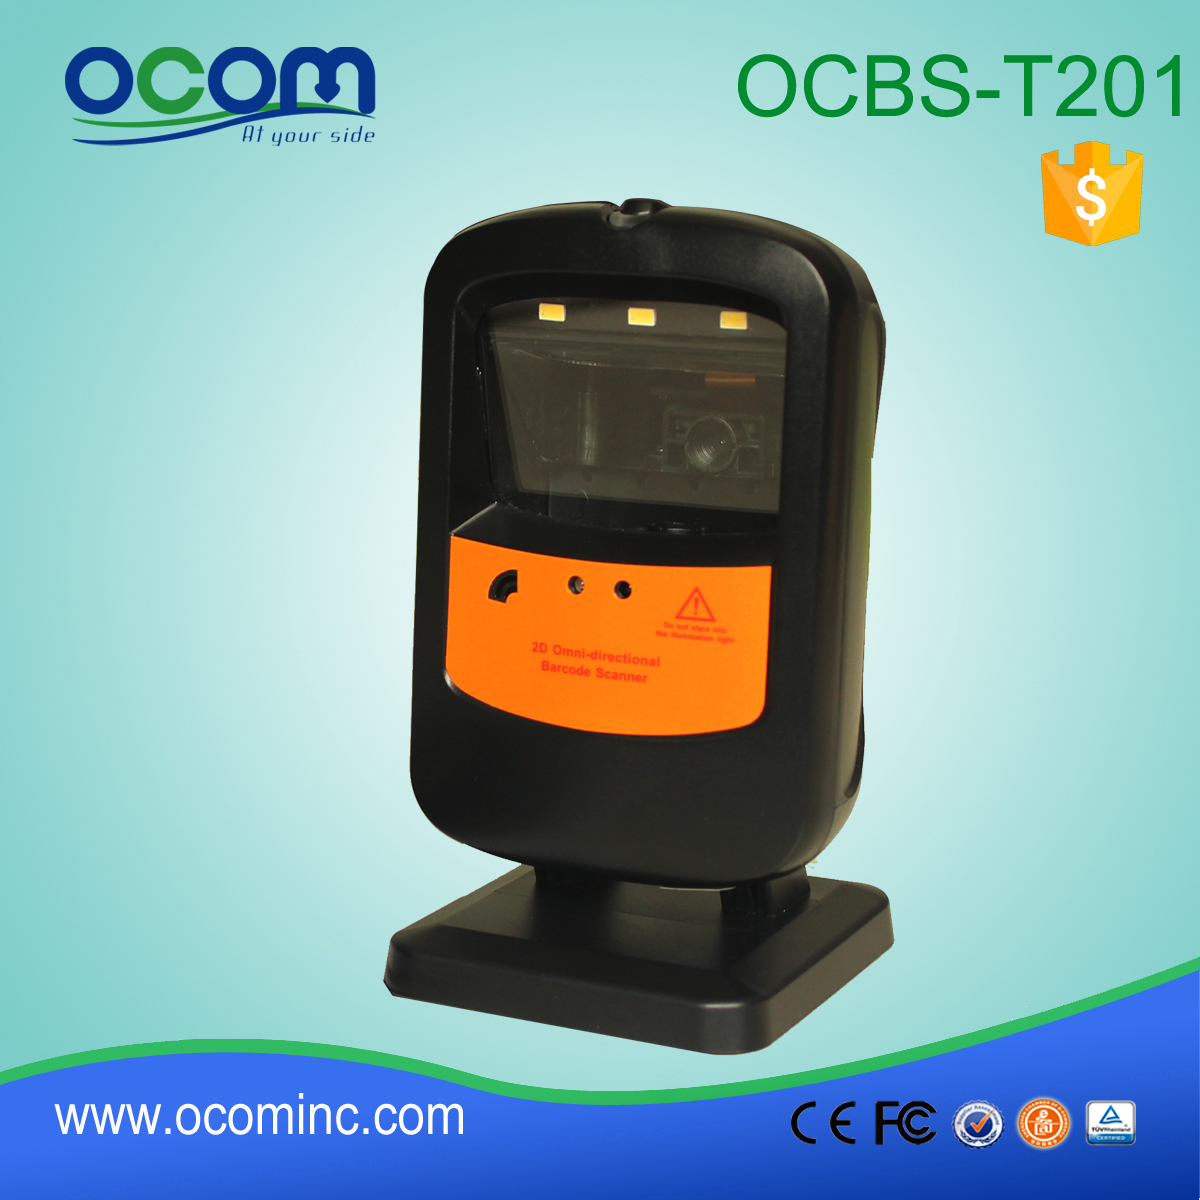 OCBS-T201: Płaski skaner kodów kreskowych cena, skaner kodów kreskowych china